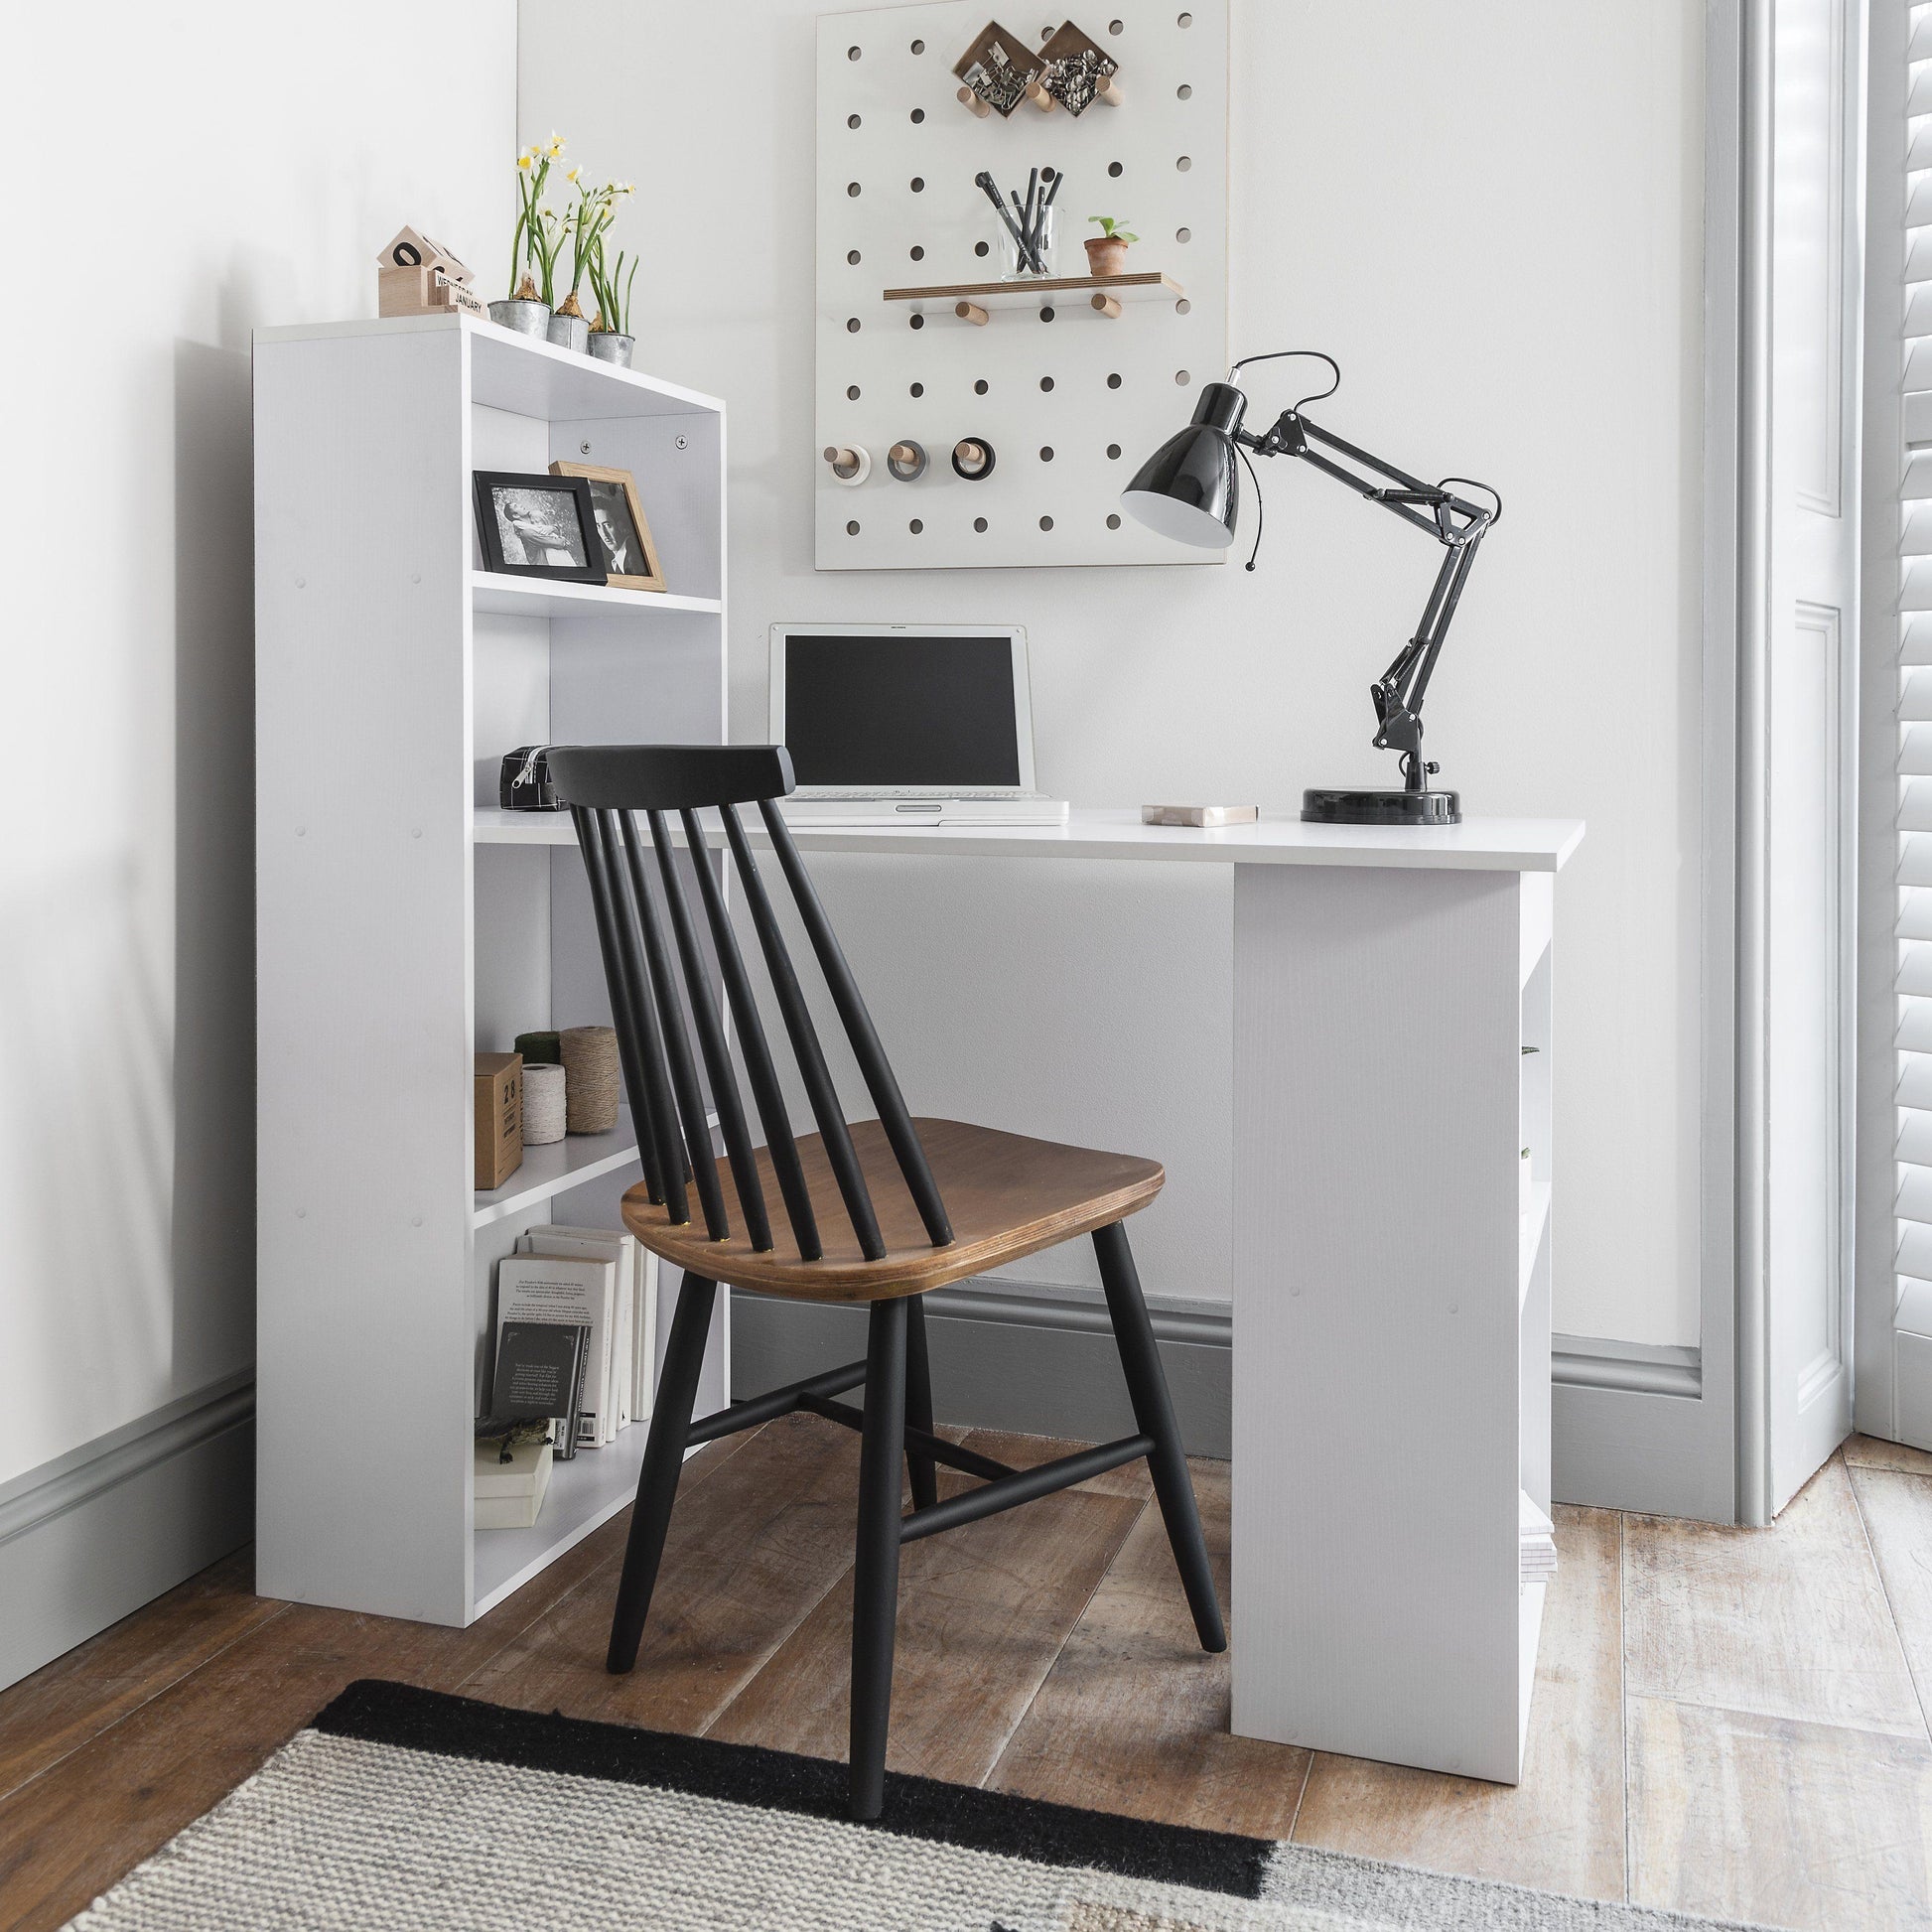 White Desk with Shelves - Laura James